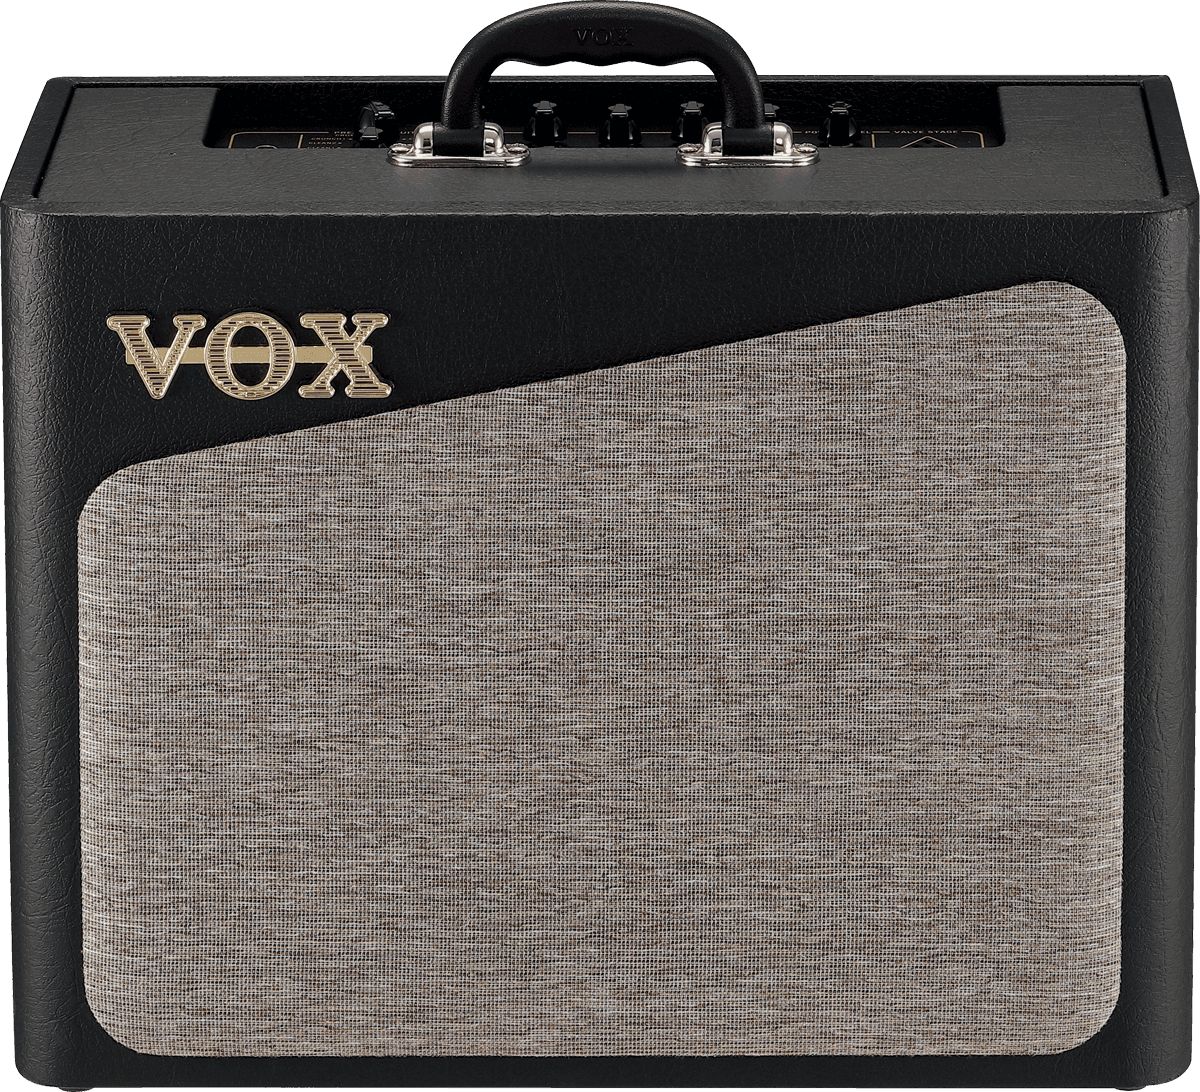 Ampli Guitare Electrique VOX VX15-GT 15Watts